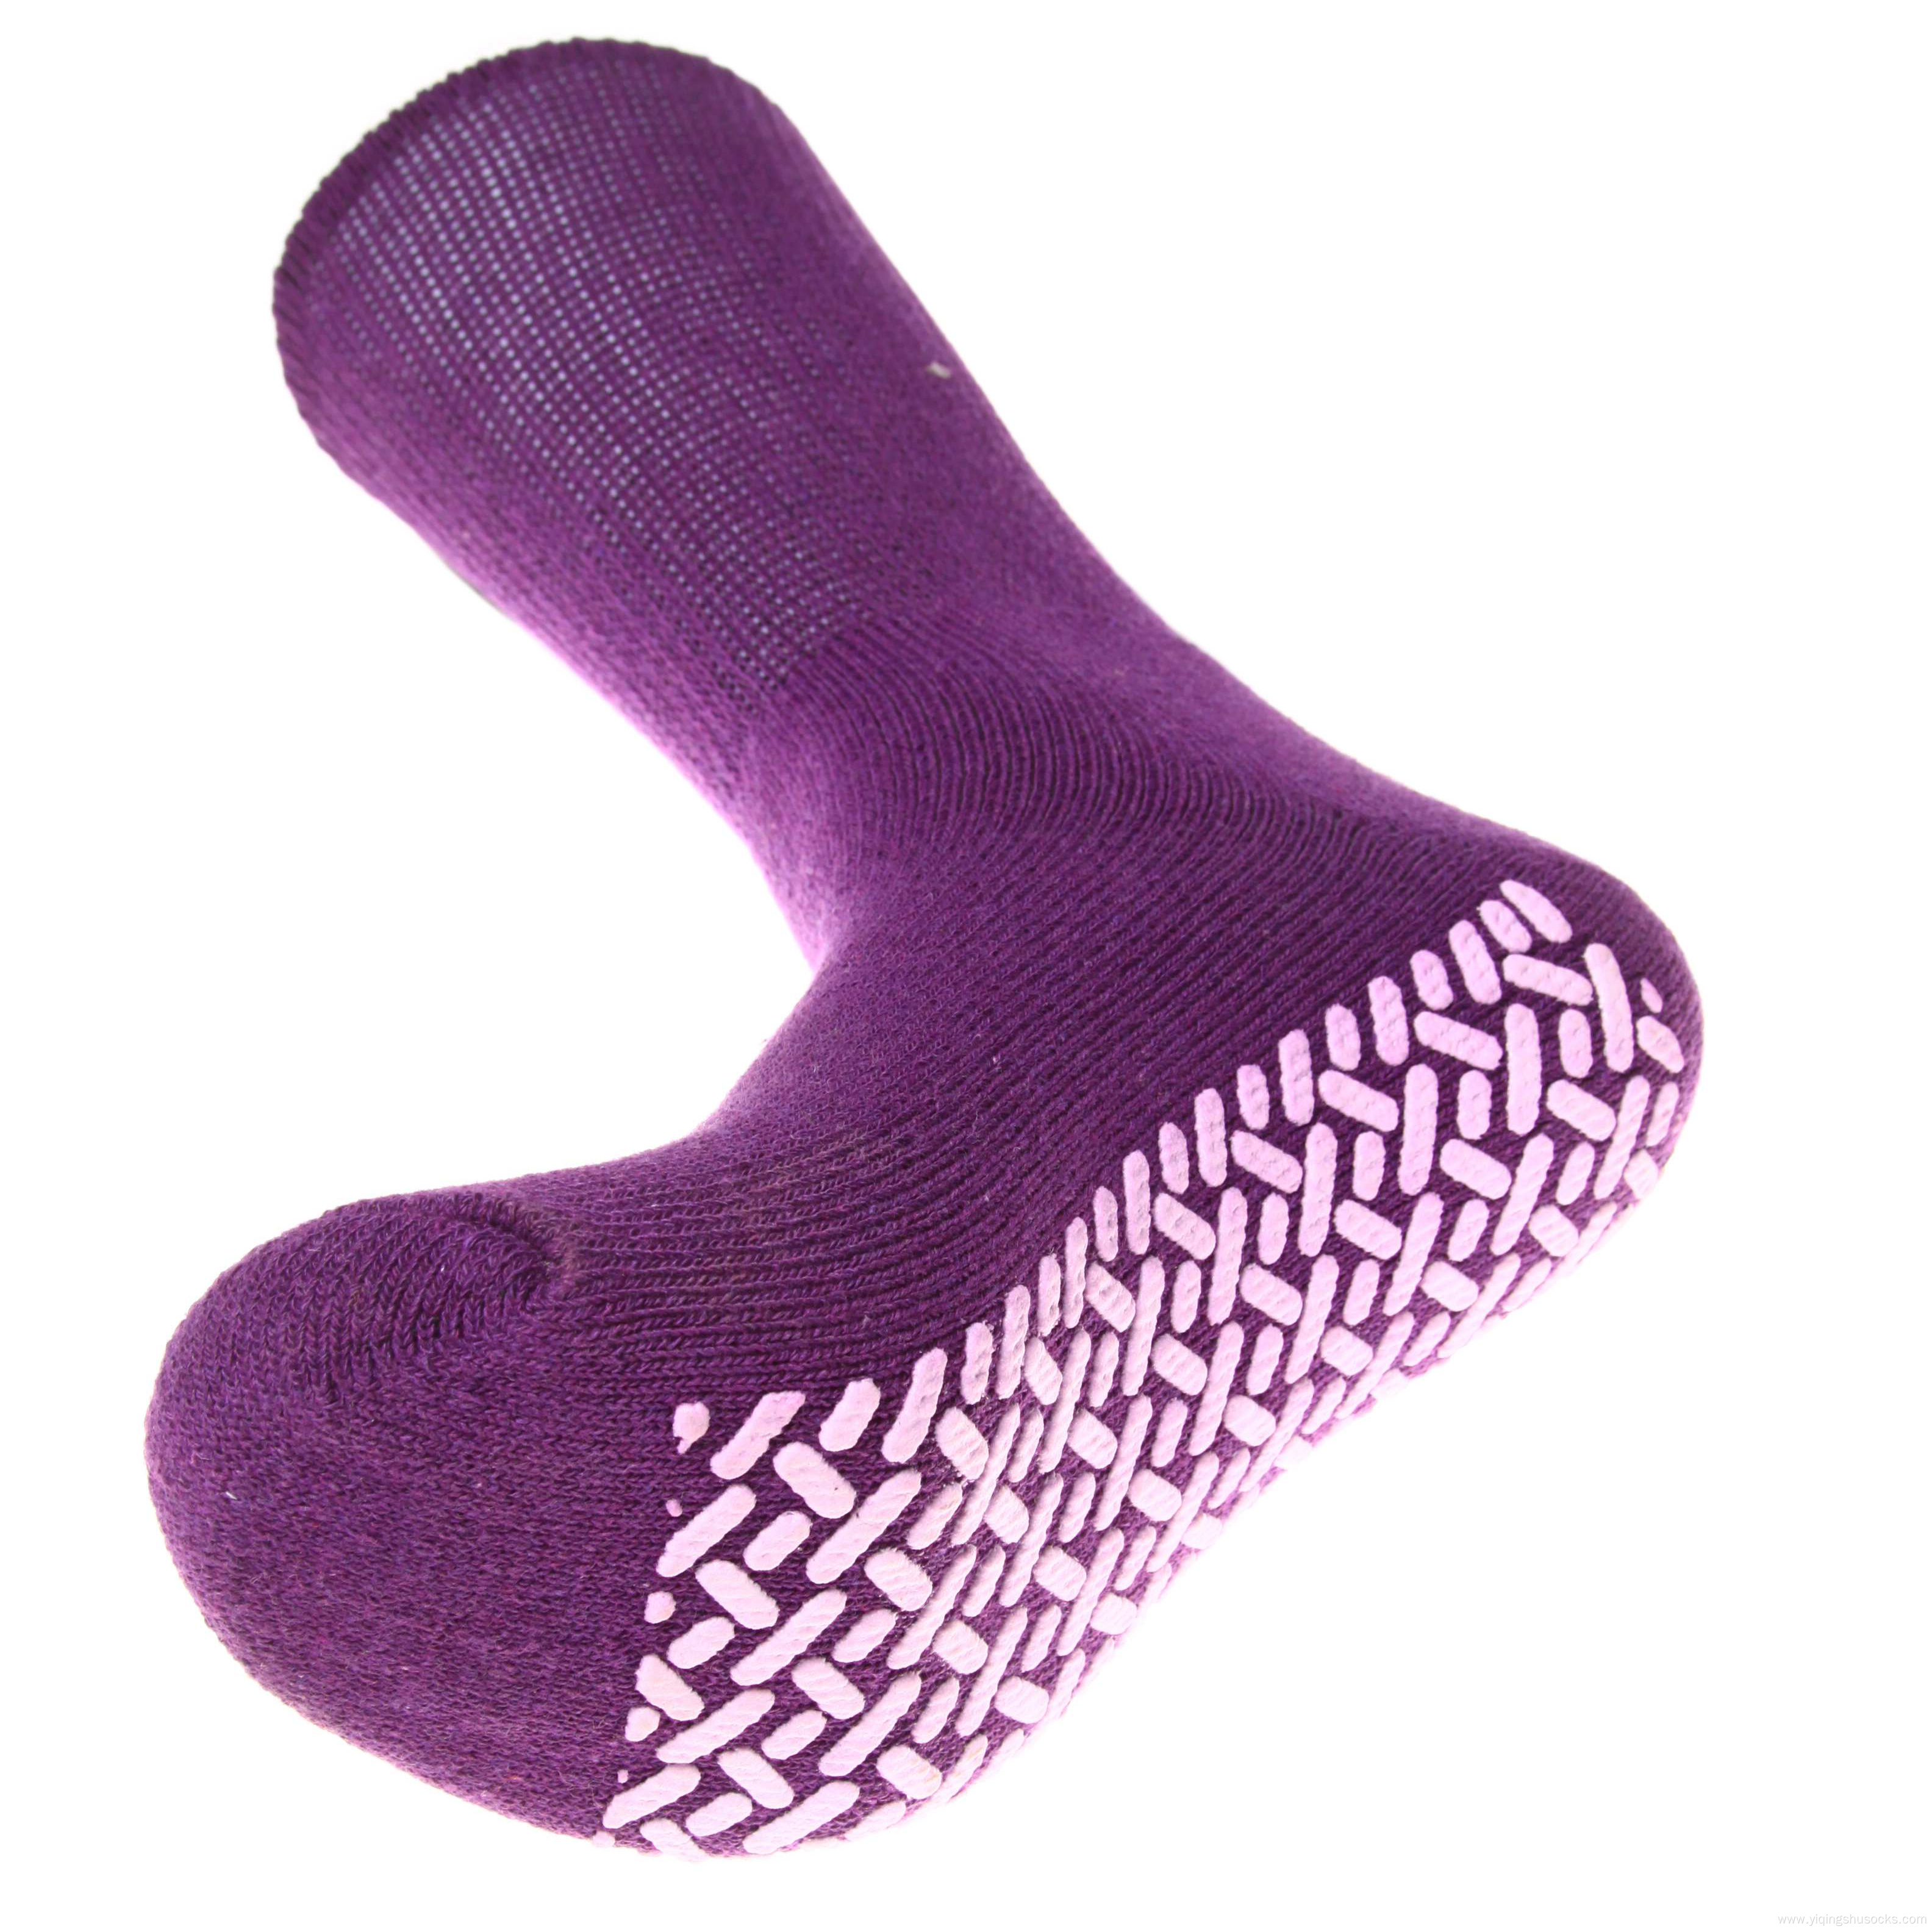 long diabetic socks kaos kaki loose diabetes socks